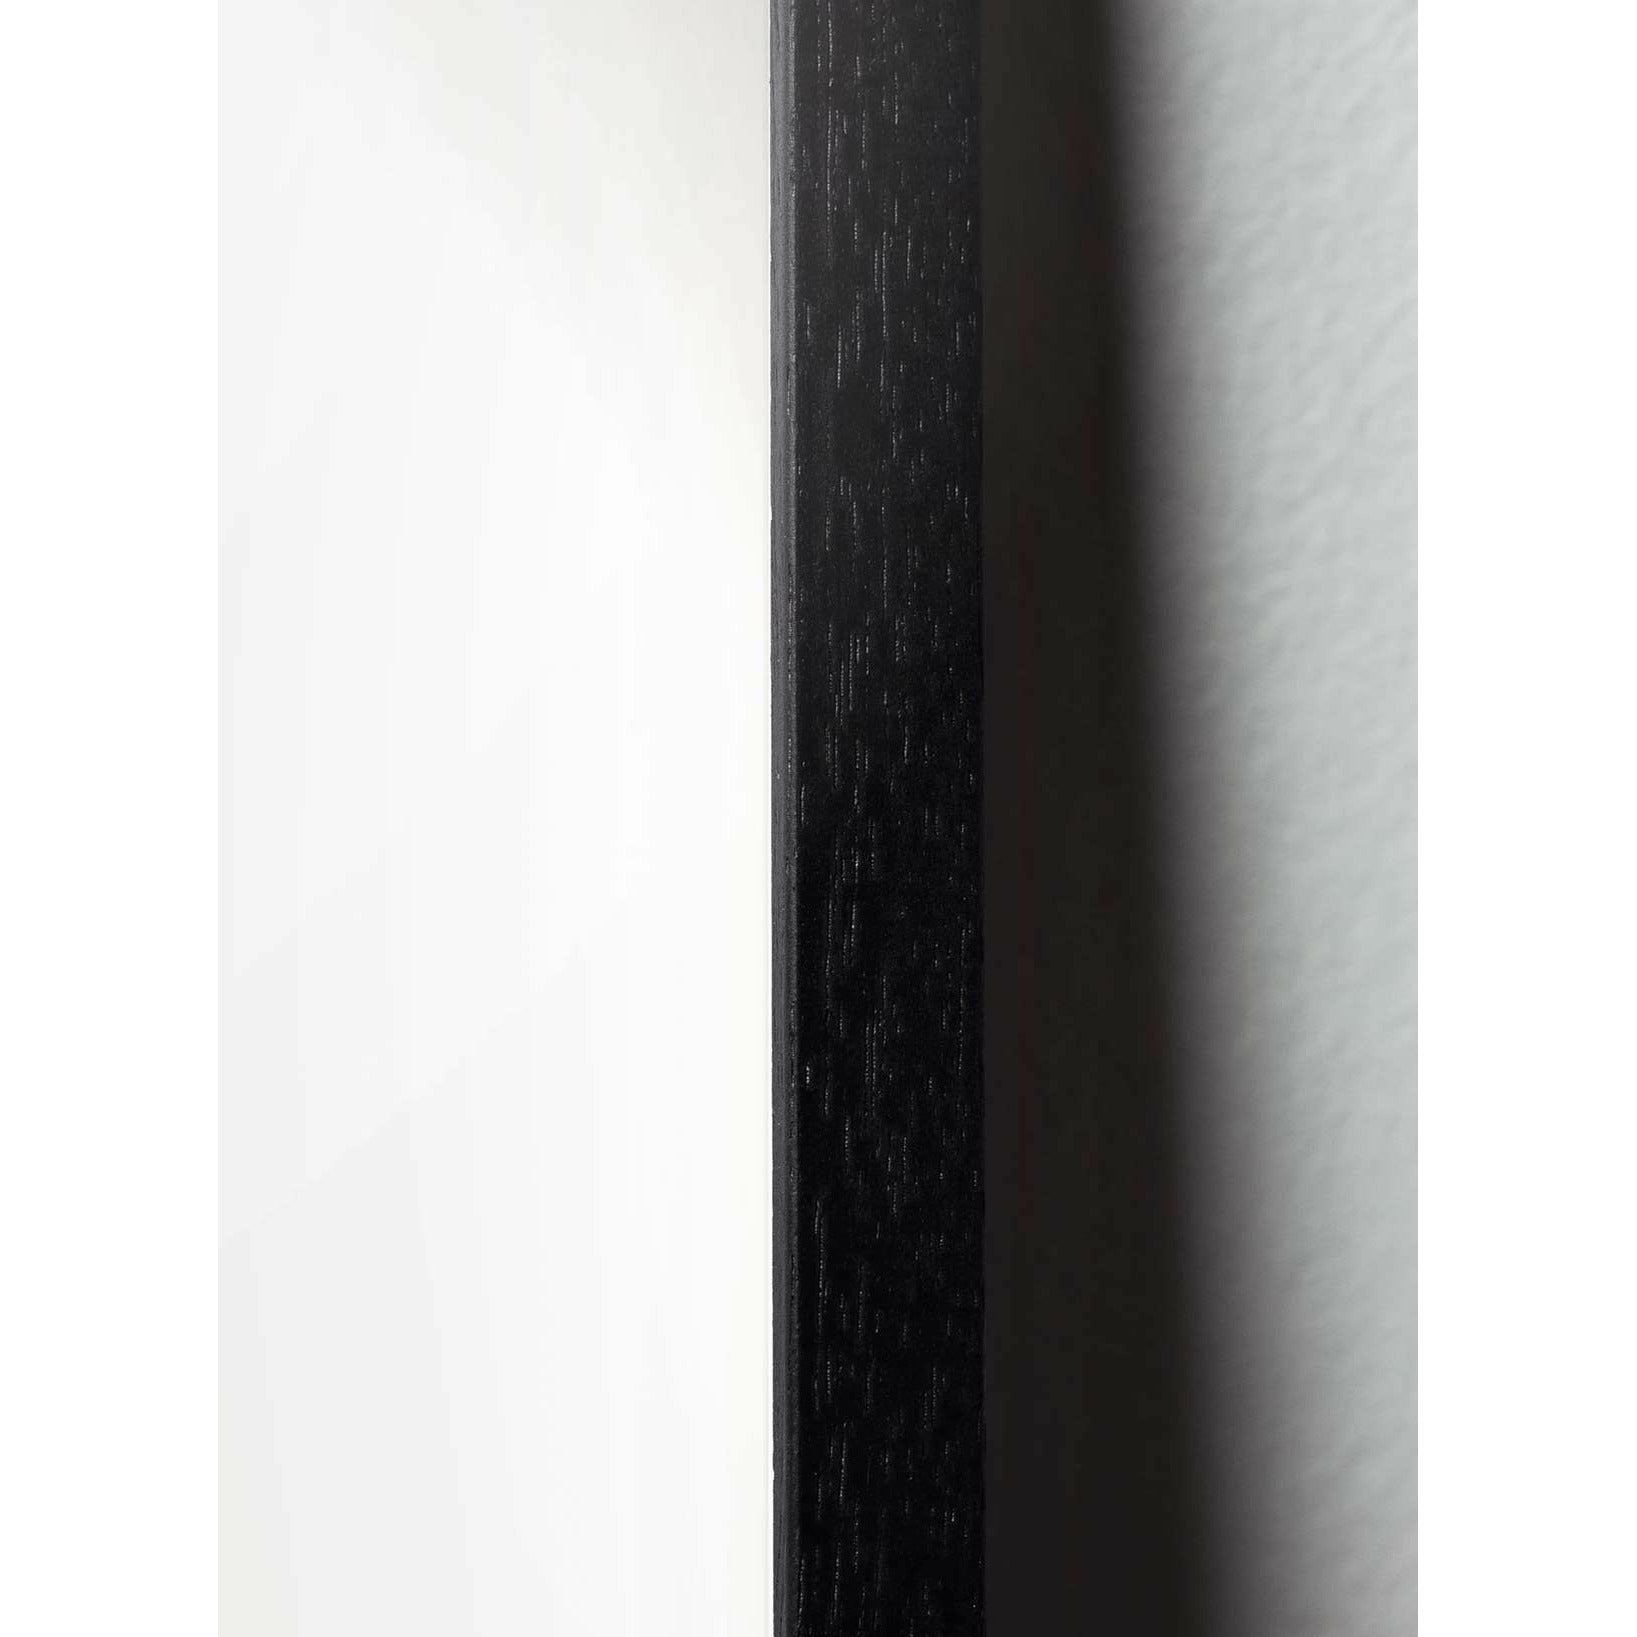 brainchild Drop Classic Poster, Rahmen in schwarz lackiertem Holz 70x100 cm, sandfarbener Hintergrund